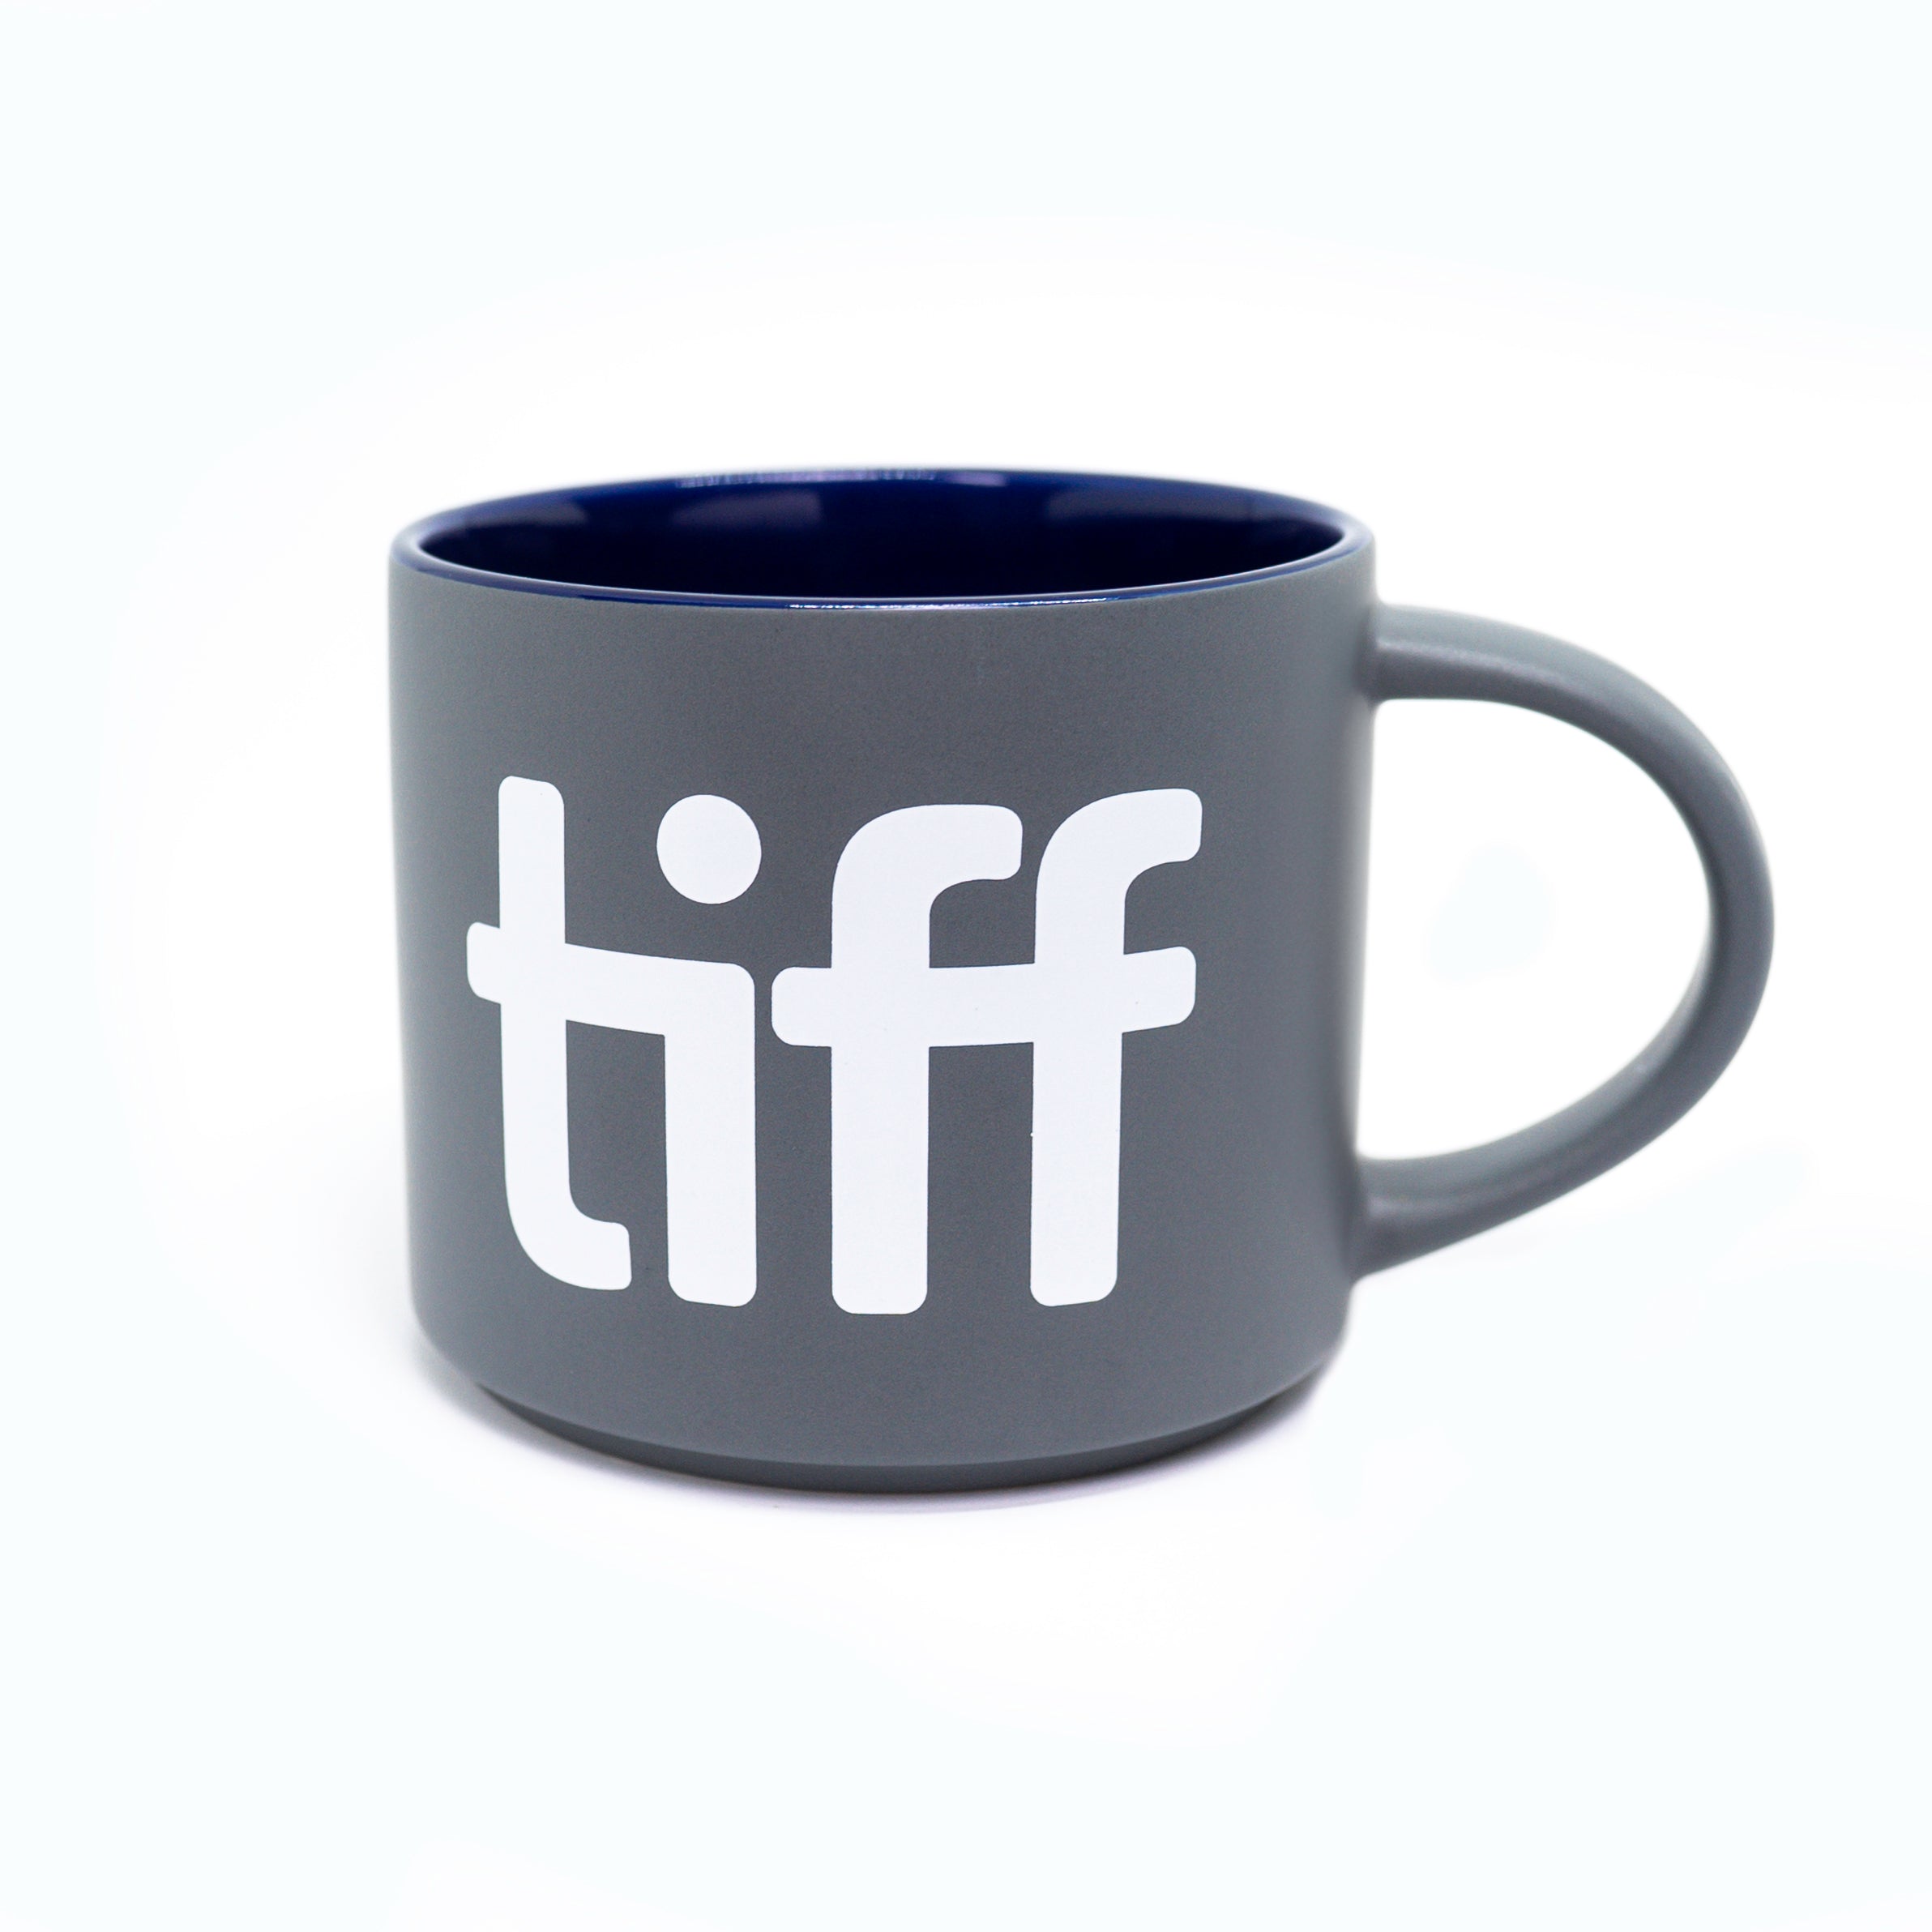 Classic TIFF Mug (Two colours)